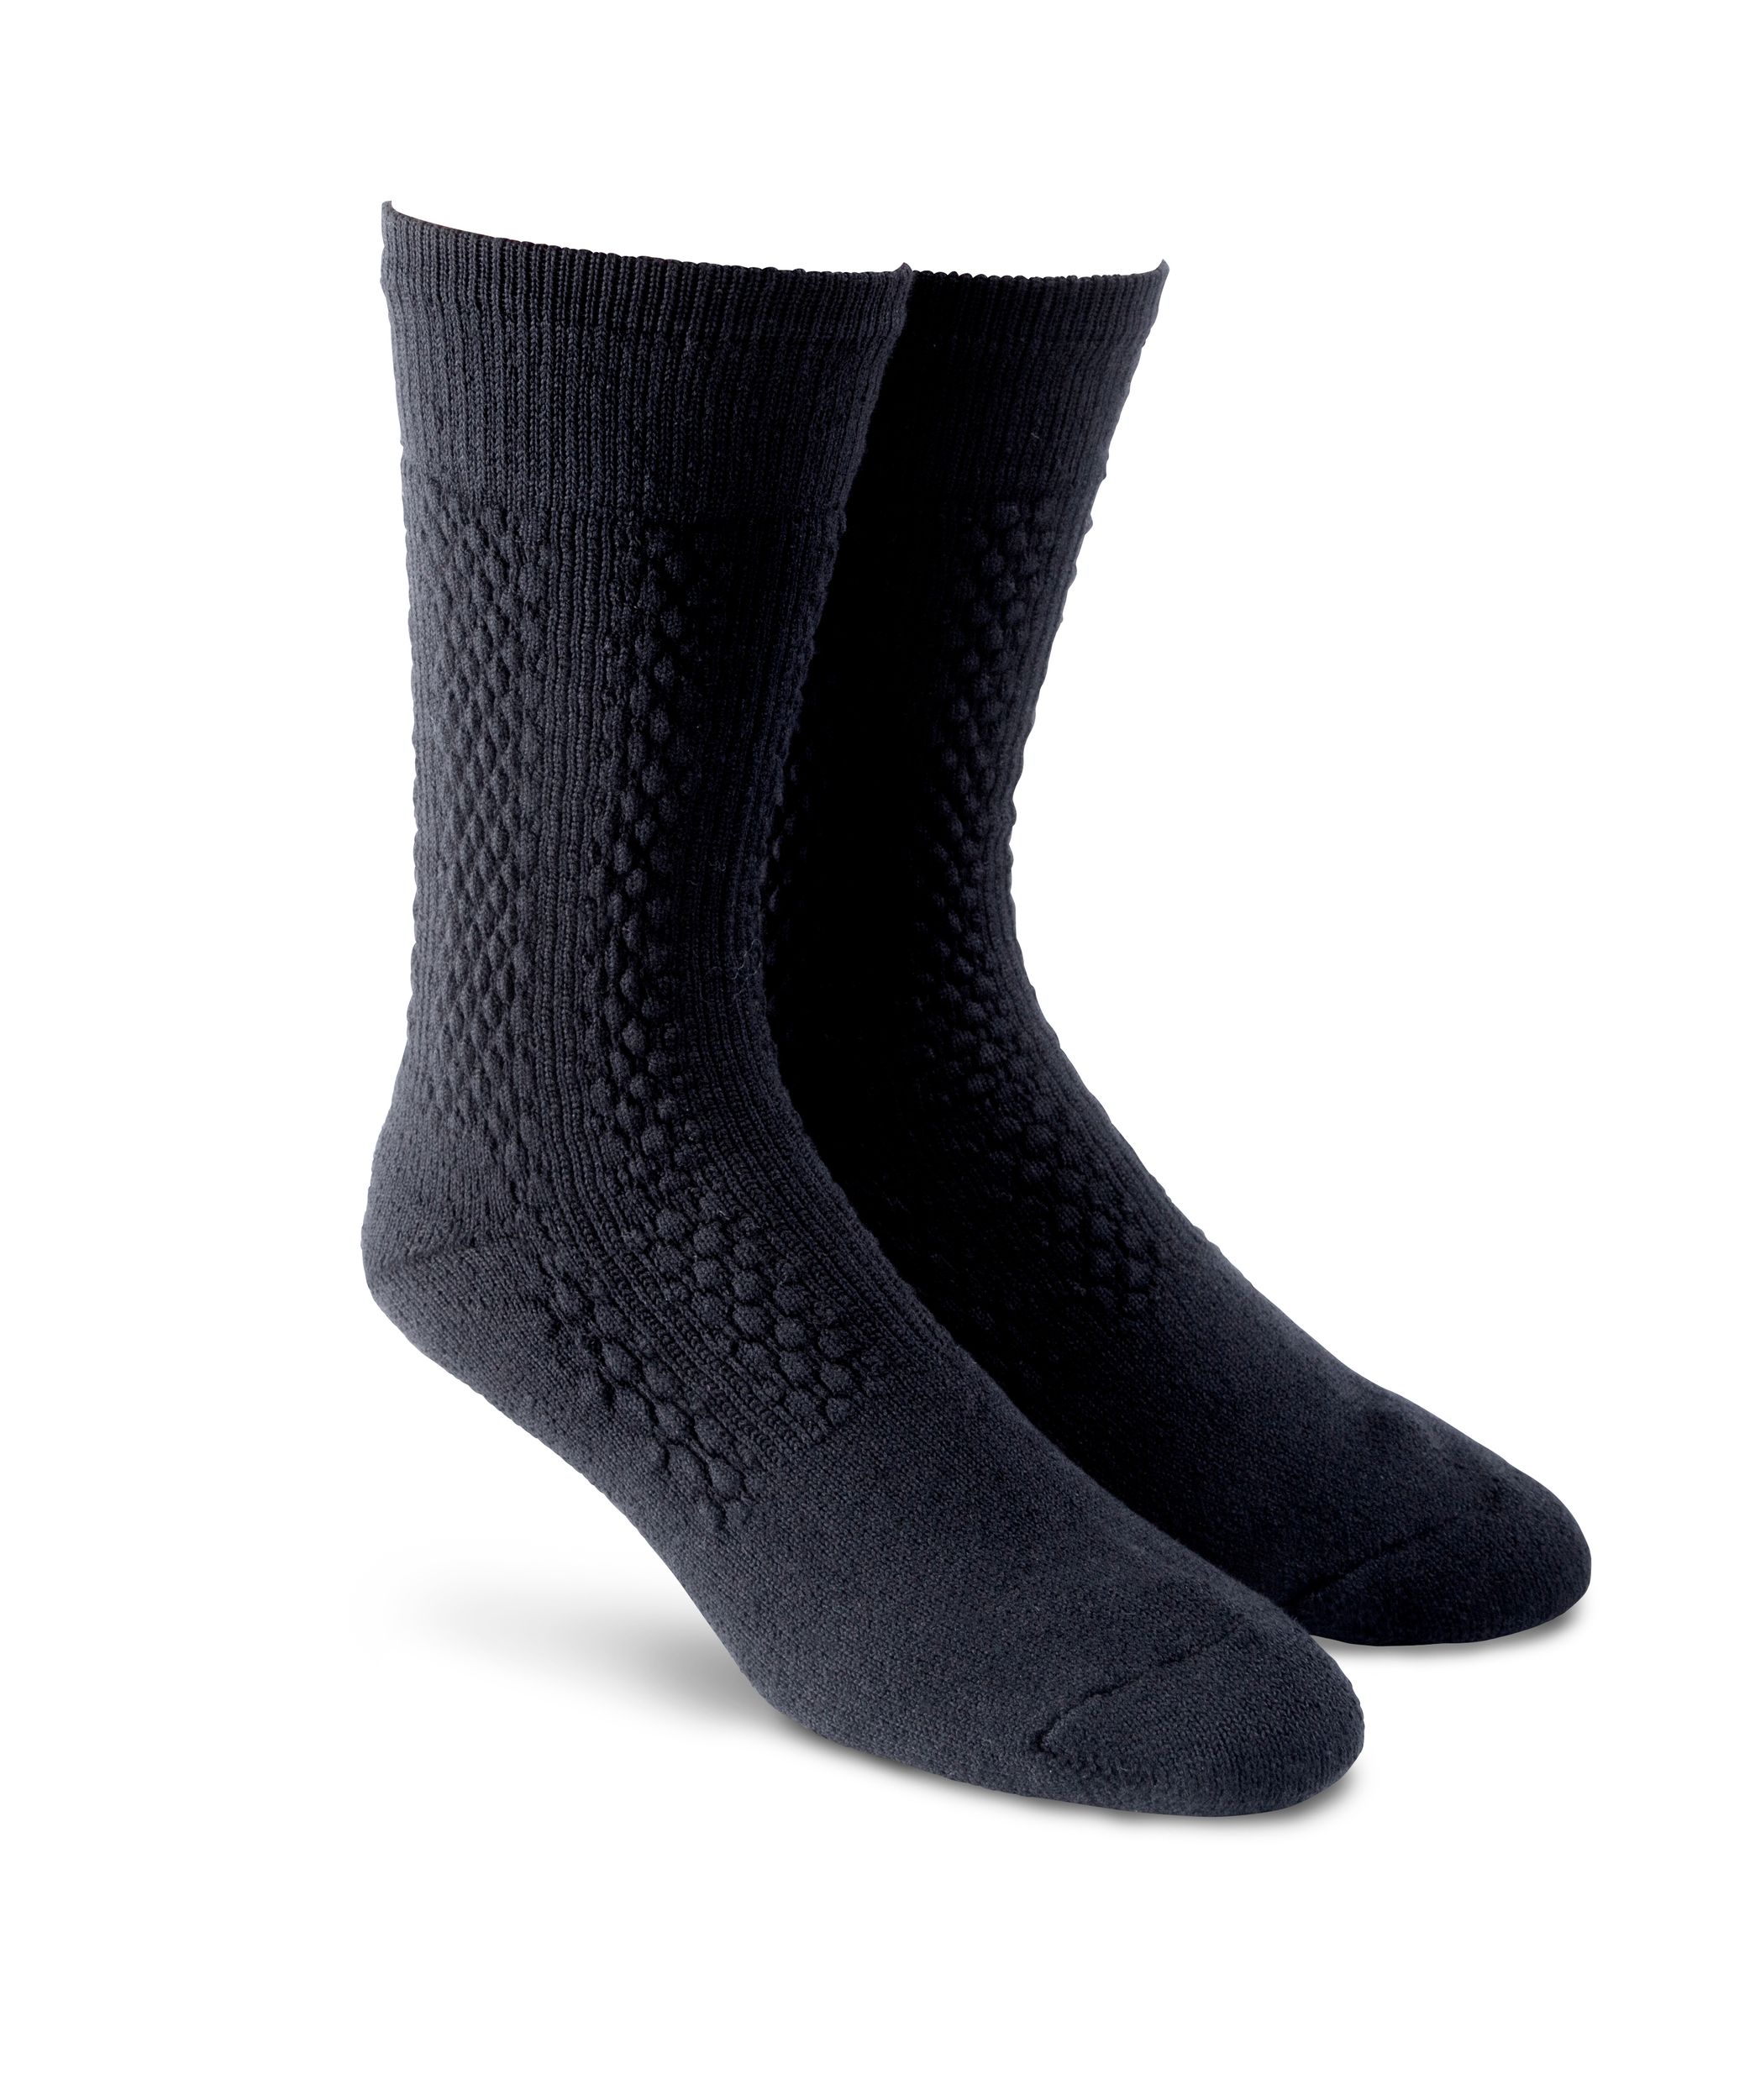 39-46 Chaussettes Happy Socks Chaussettes Rayées pour hommes et